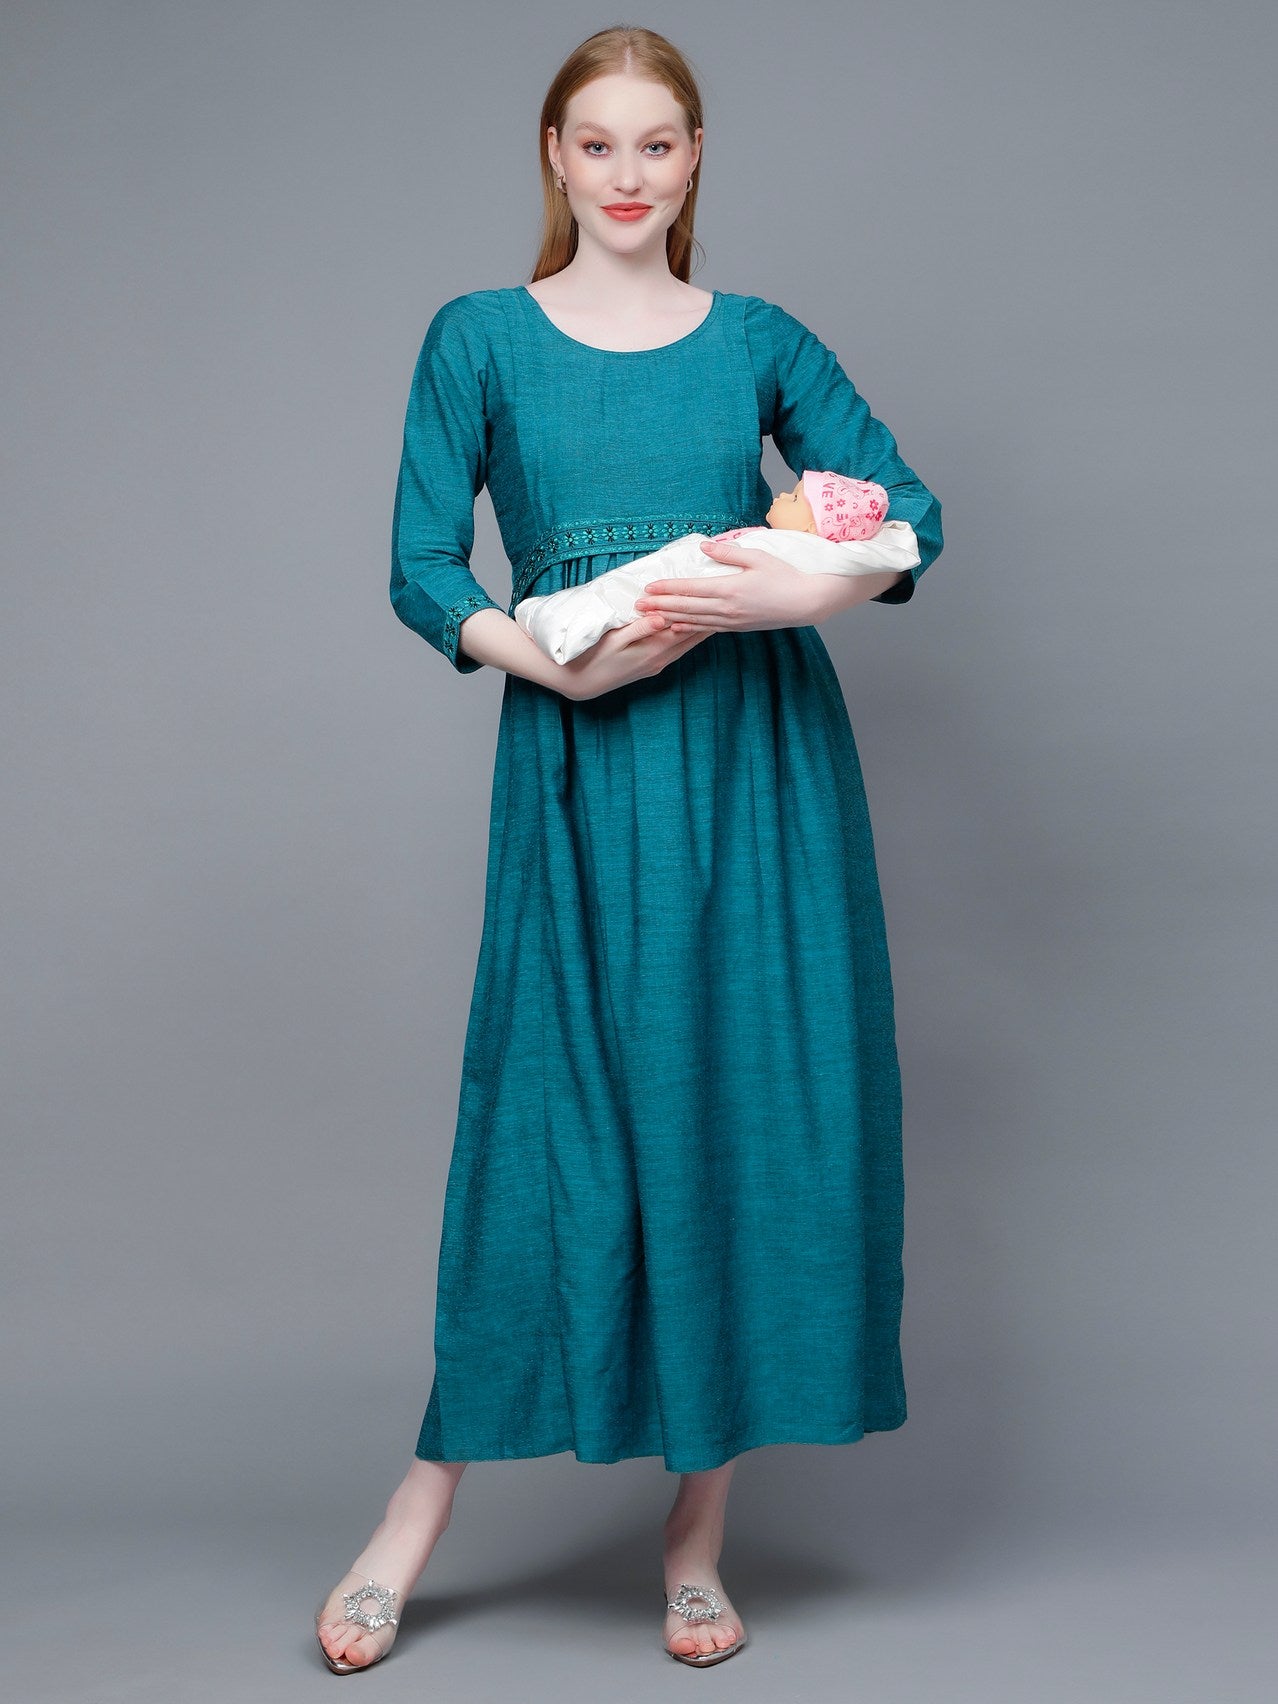 Trendy Maternity Dress For Nursing